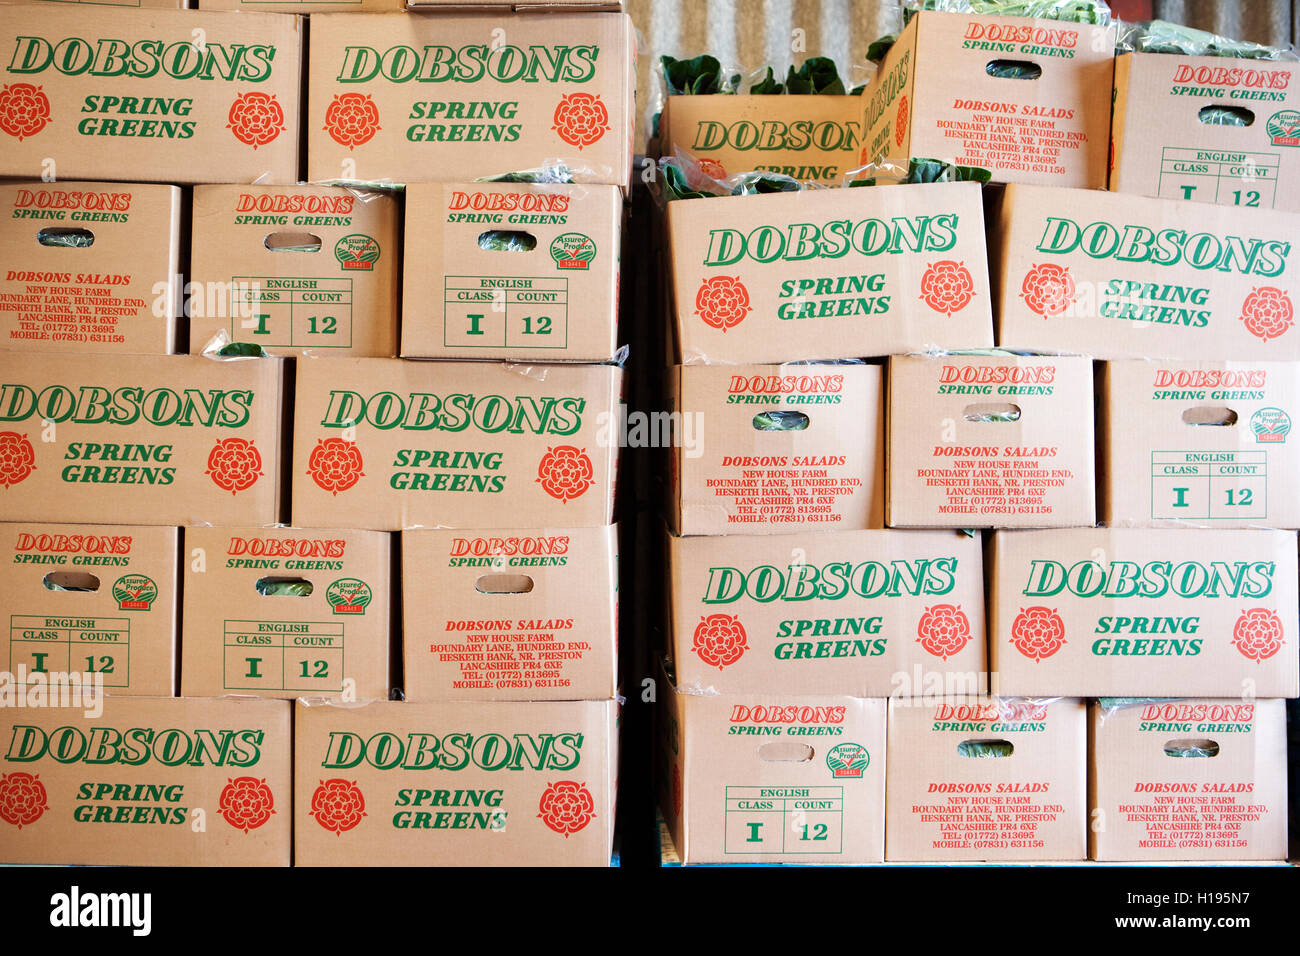 Les cultures de salade en boîte prête à l'exportation vers l'UE, Lancashire, UK Banque D'Images